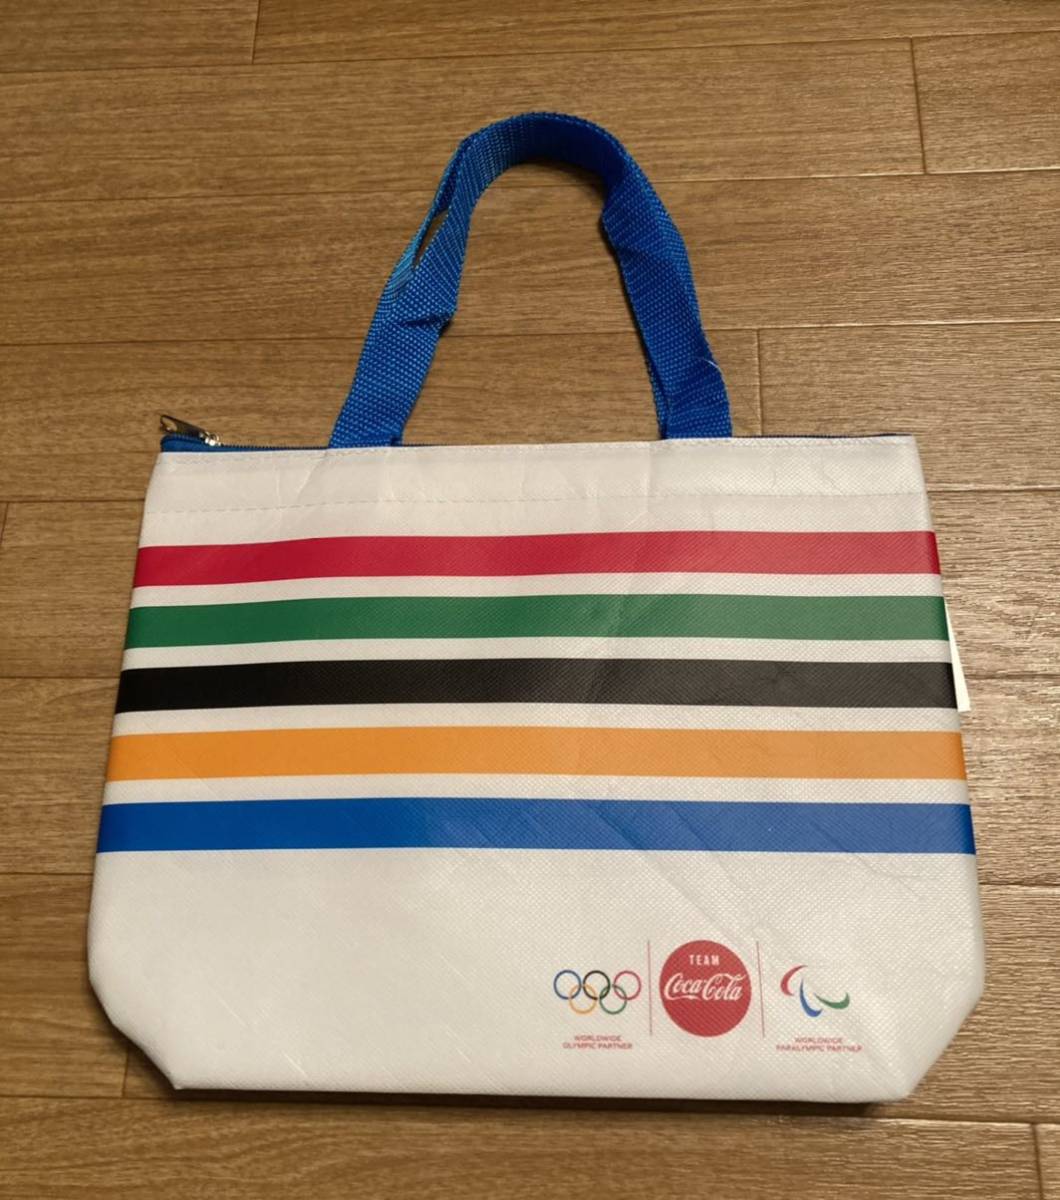 東京オリンピック コカコーラ クーラーバッグ